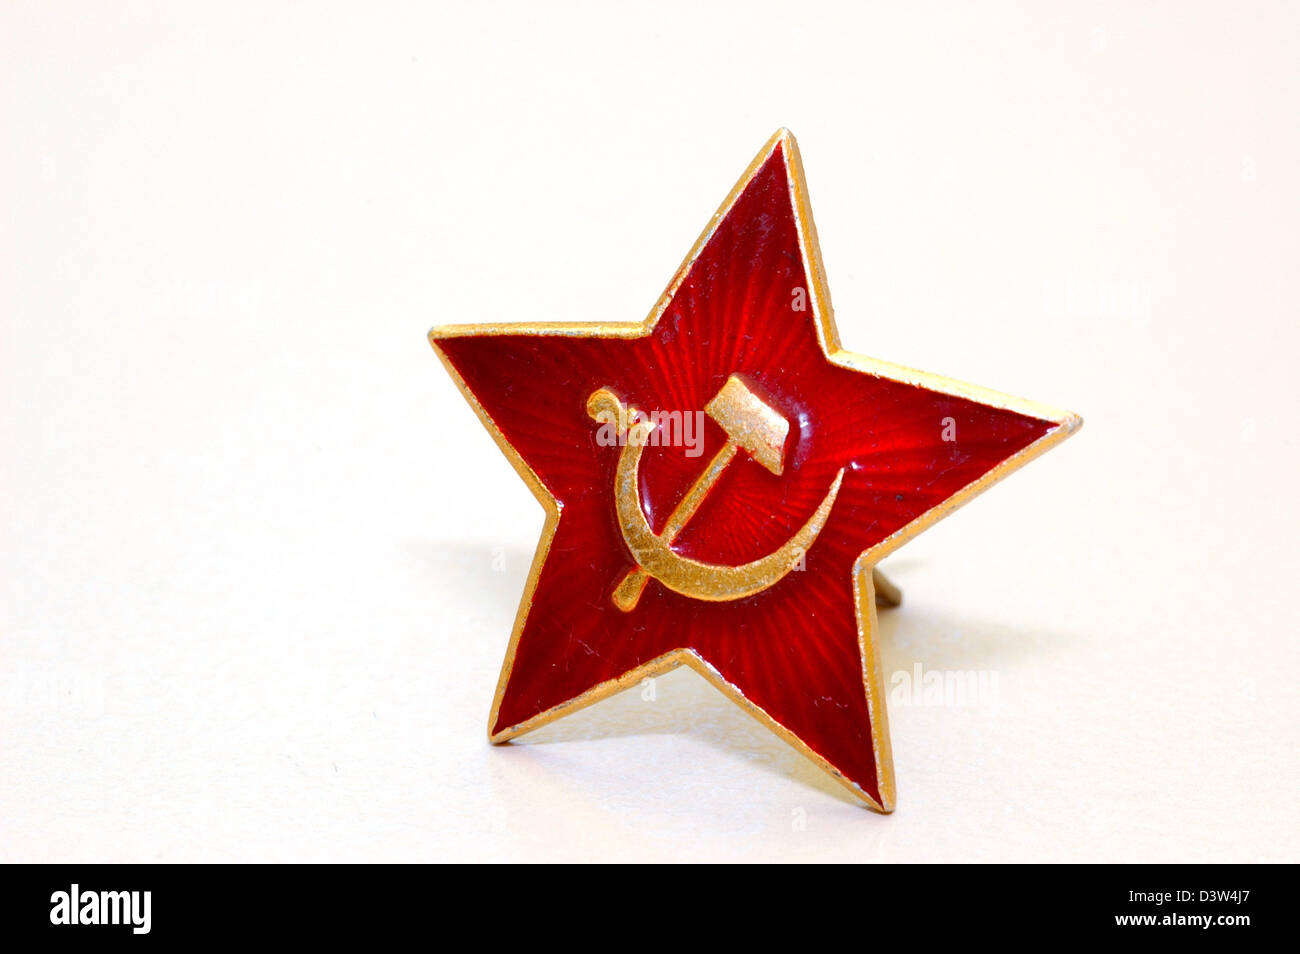 La photo non datée montre une étoile soviétique, le symbole communiste de l'ex UdSSR, un pentagramme sur fond rouge avec un marteau et une faucille en 2006. Photo : Romain Fellens Banque D'Images